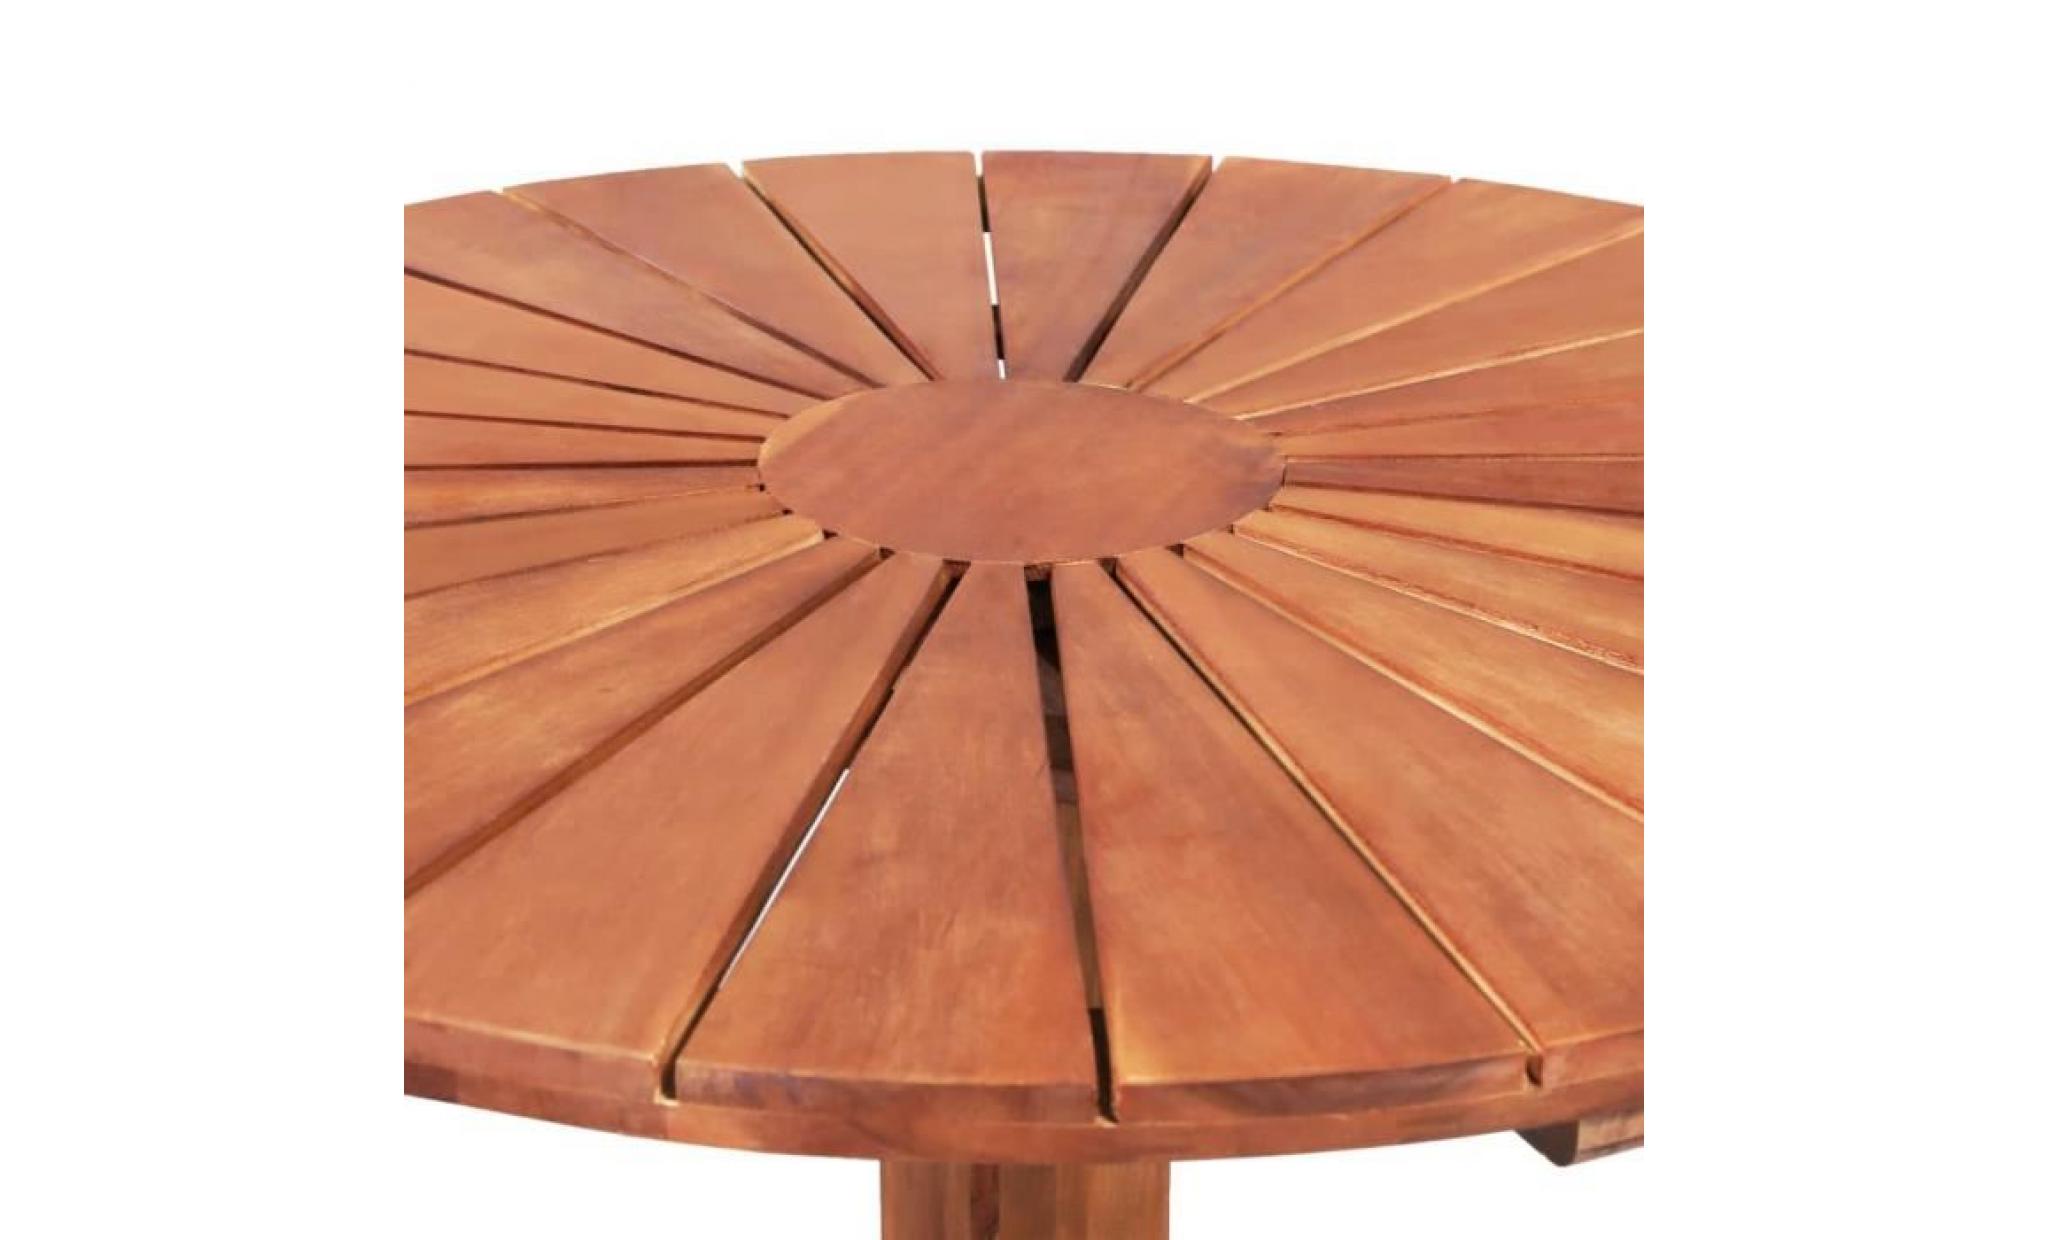 tables d'extérieur table sur pied bois d'acacia massif 70 x 70 cm rond pas cher